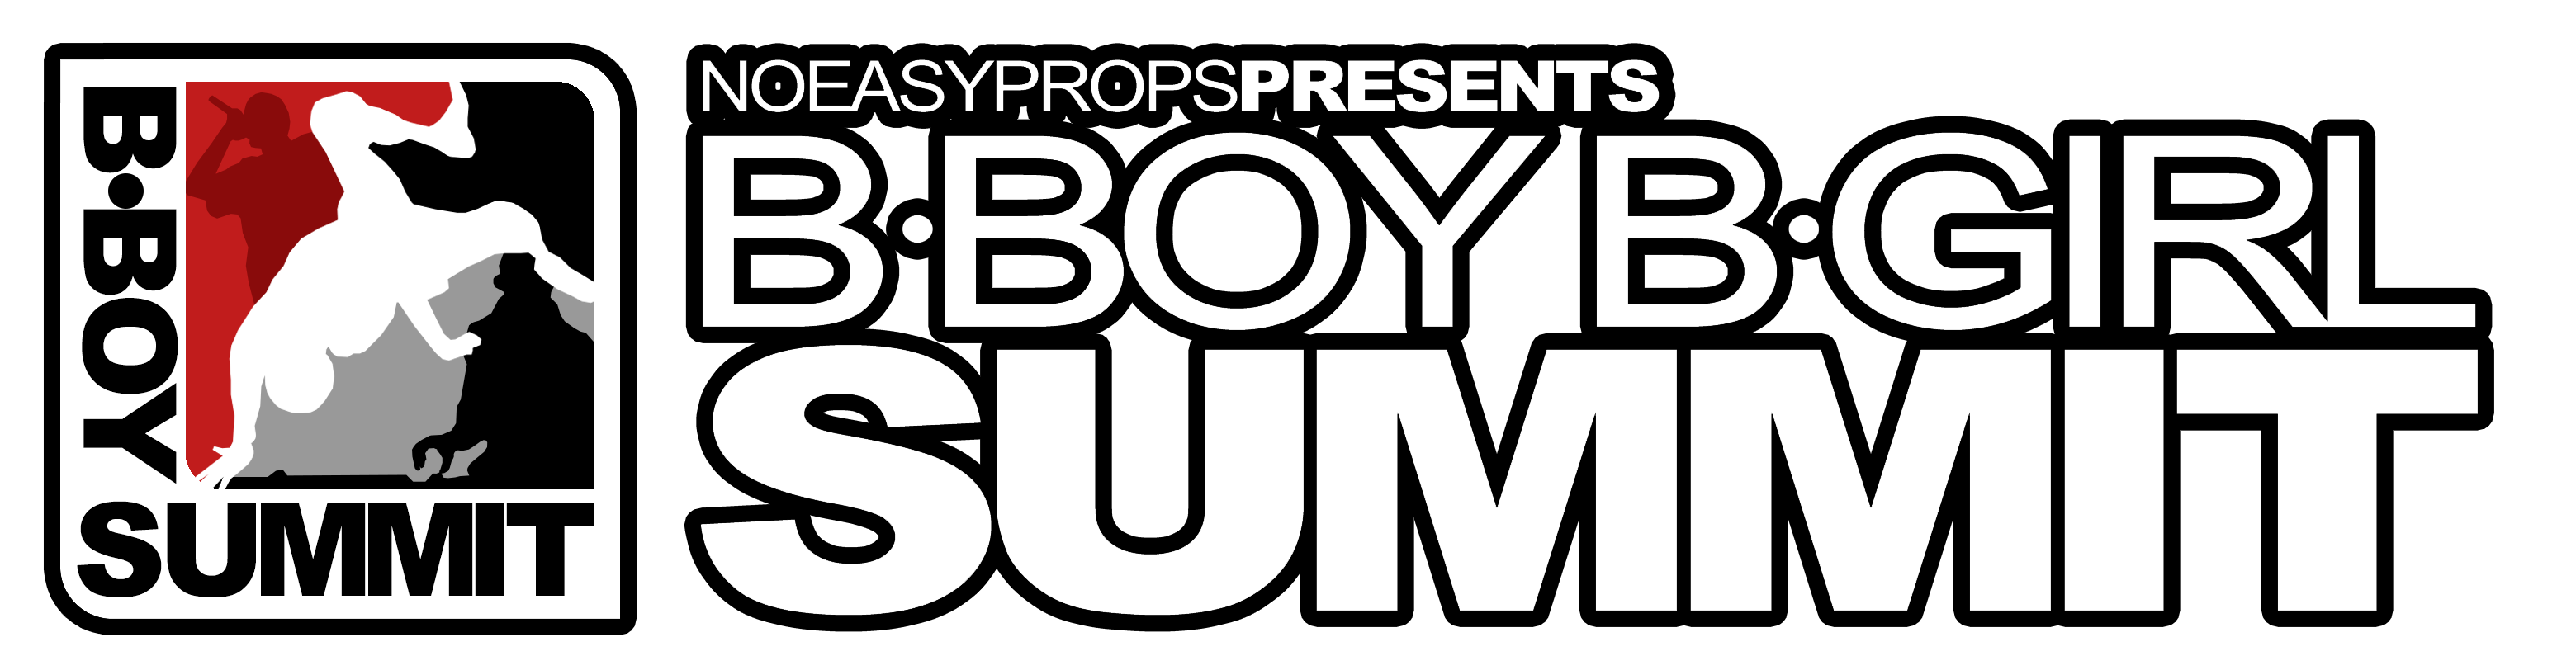 B-Boy Summit